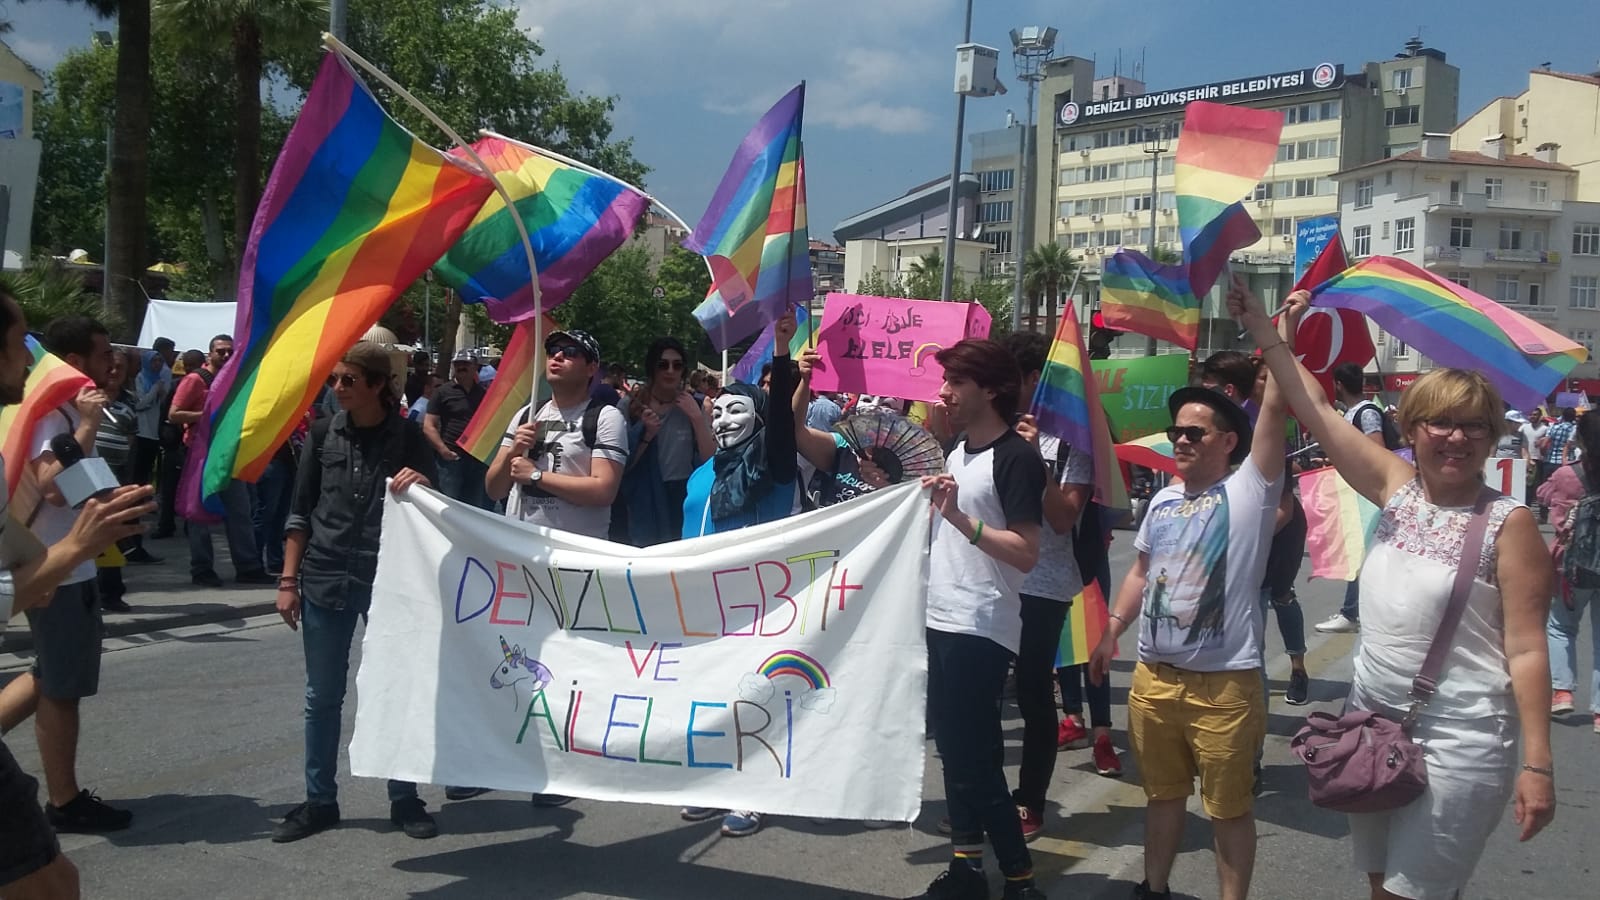 Denizli LGBTİ+ Aileleri'nden çağrı: 1 Mayıs’ta alanlardayız aşkım! Kaos GL - LGBTİ+ Haber Portalı